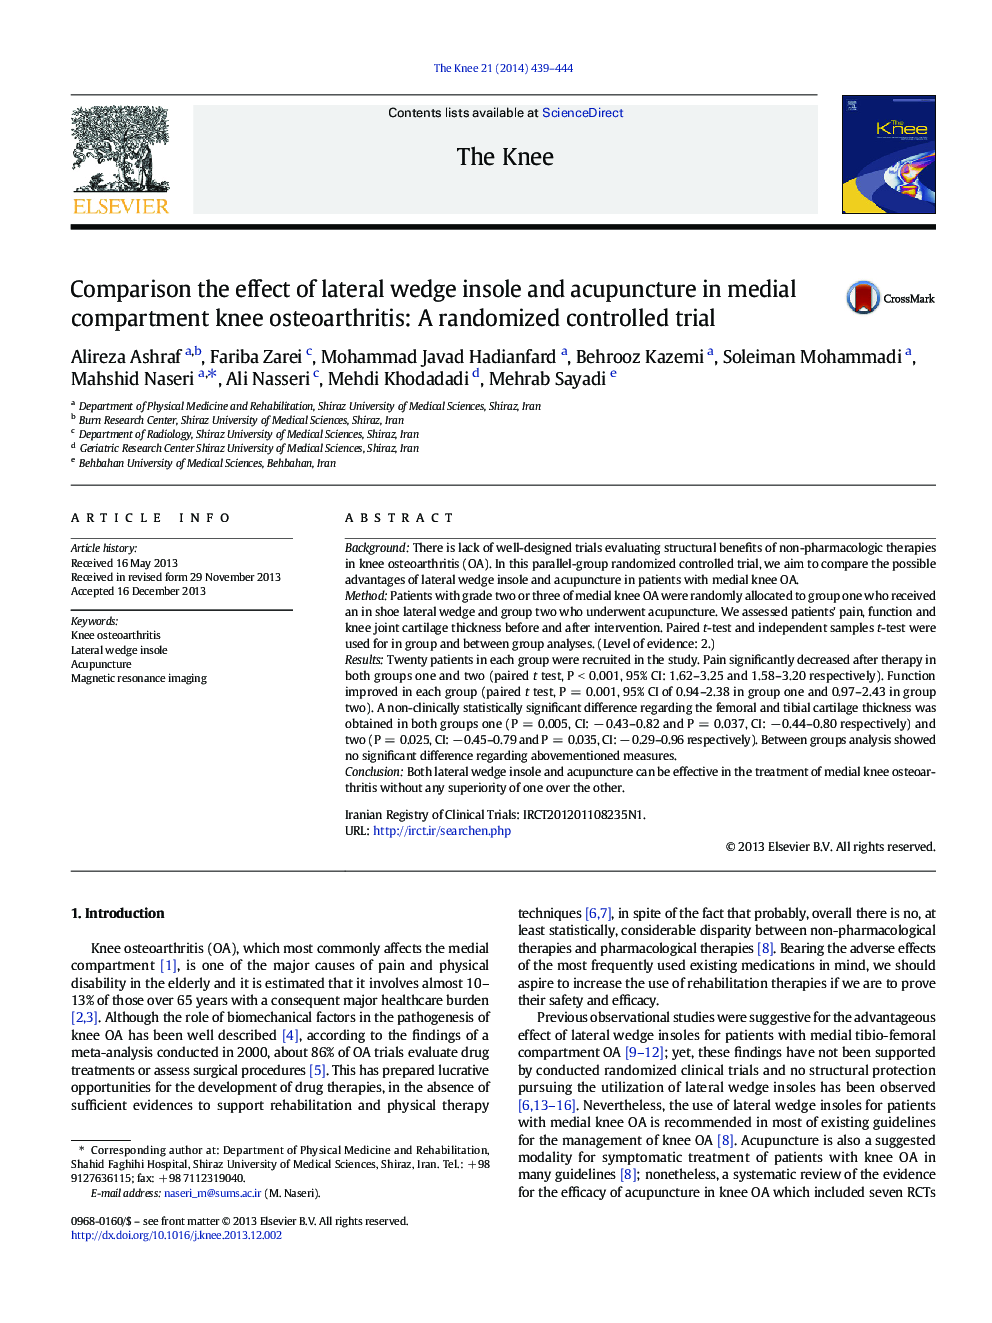 مقایسه تأثیر صندل گوه و طب سوزنی در استئوآرتریت زانو در محیط داخلی: یک کارآزمایی کنترل شده تصادفی 